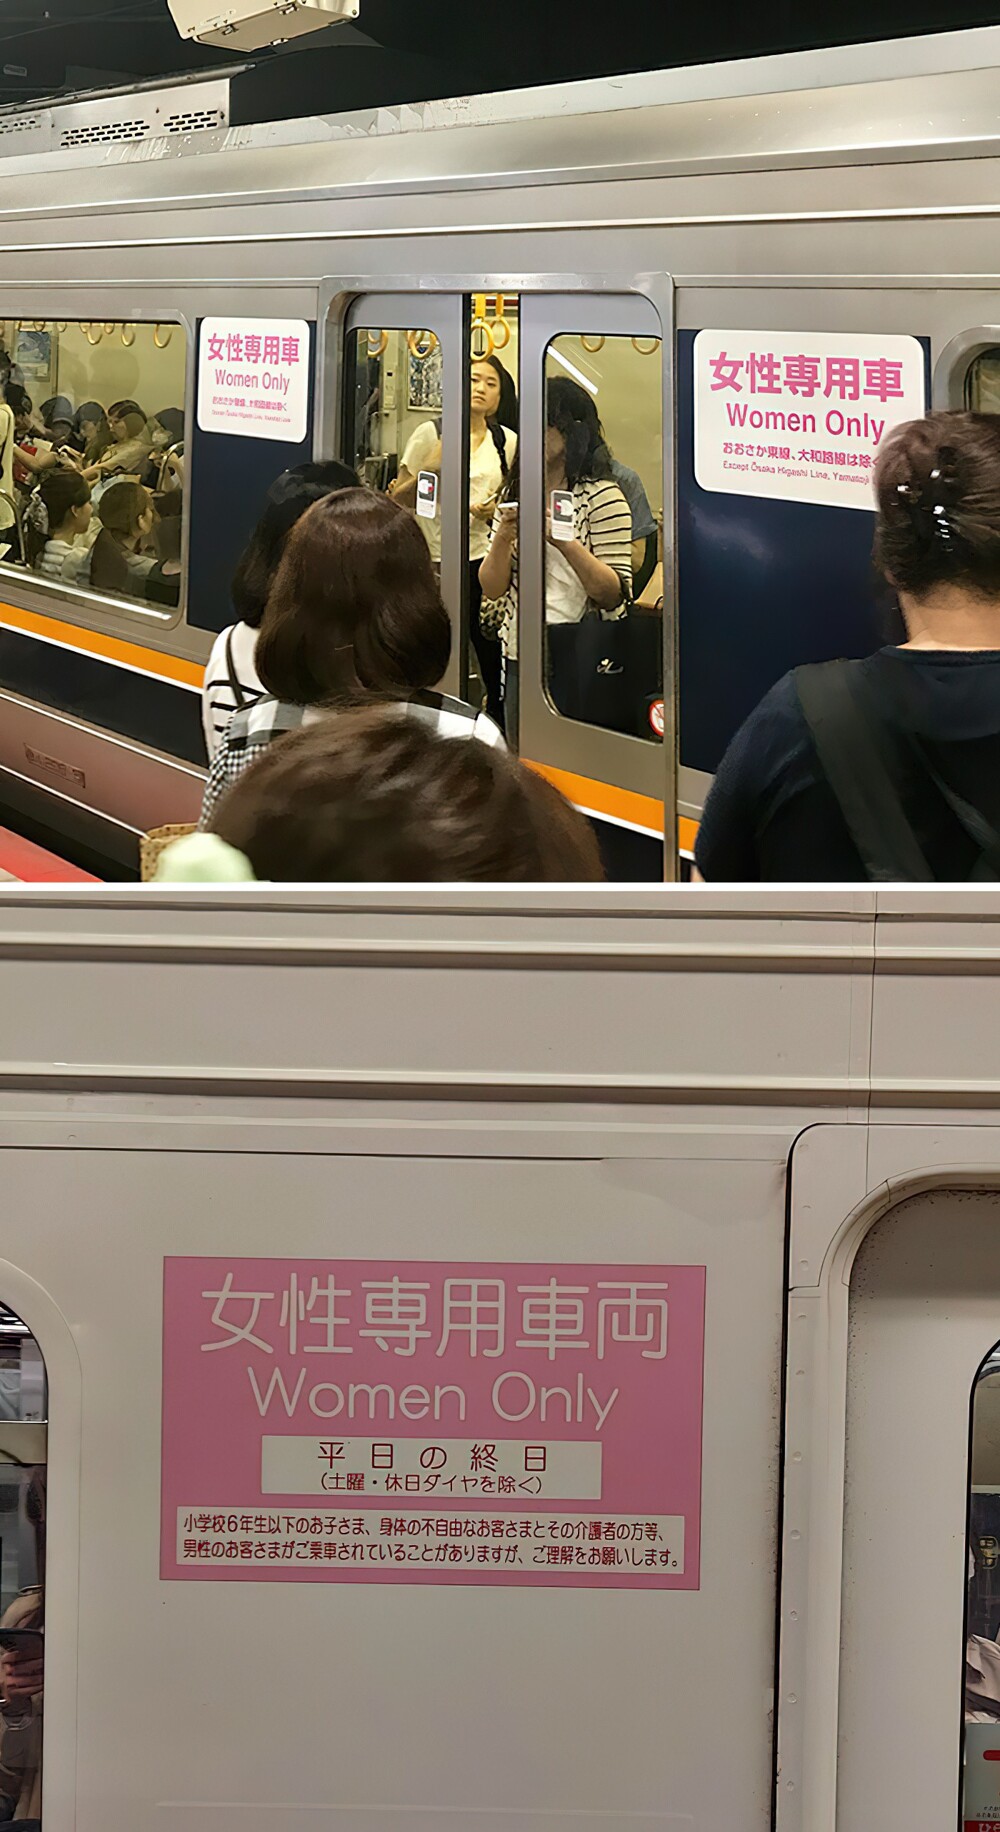 20. В японском метро есть вагоны только для женщин